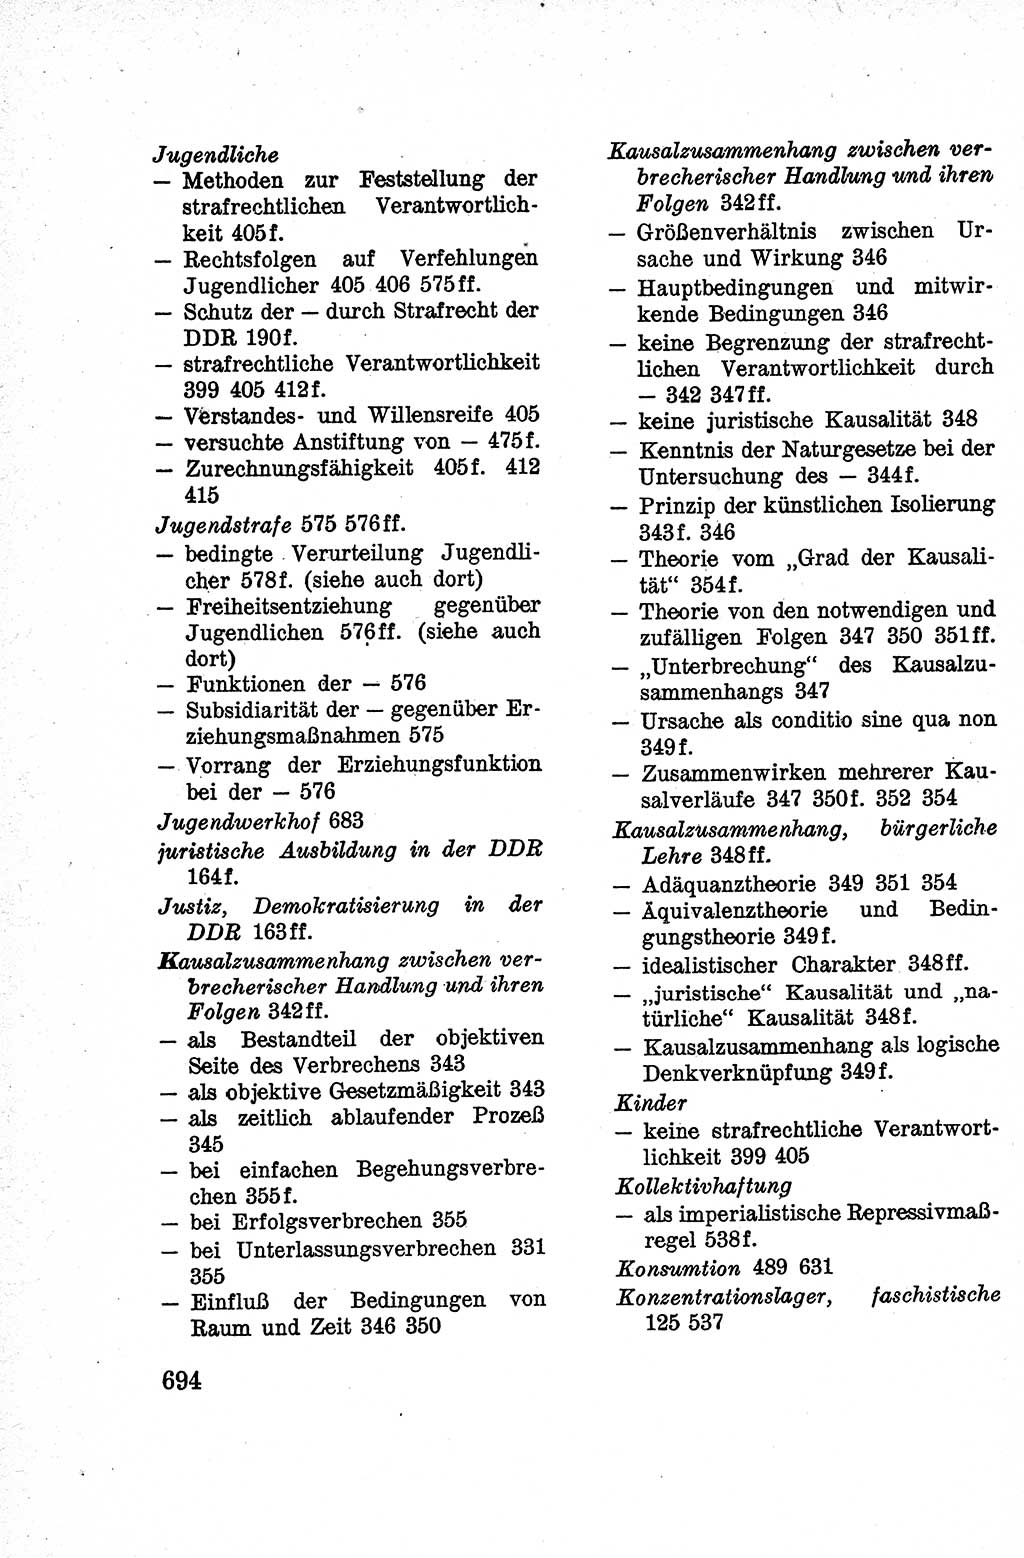 Lehrbuch des Strafrechts der Deutschen Demokratischen Republik (DDR), Allgemeiner Teil 1959, Seite 694 (Lb. Strafr. DDR AT 1959, S. 694)